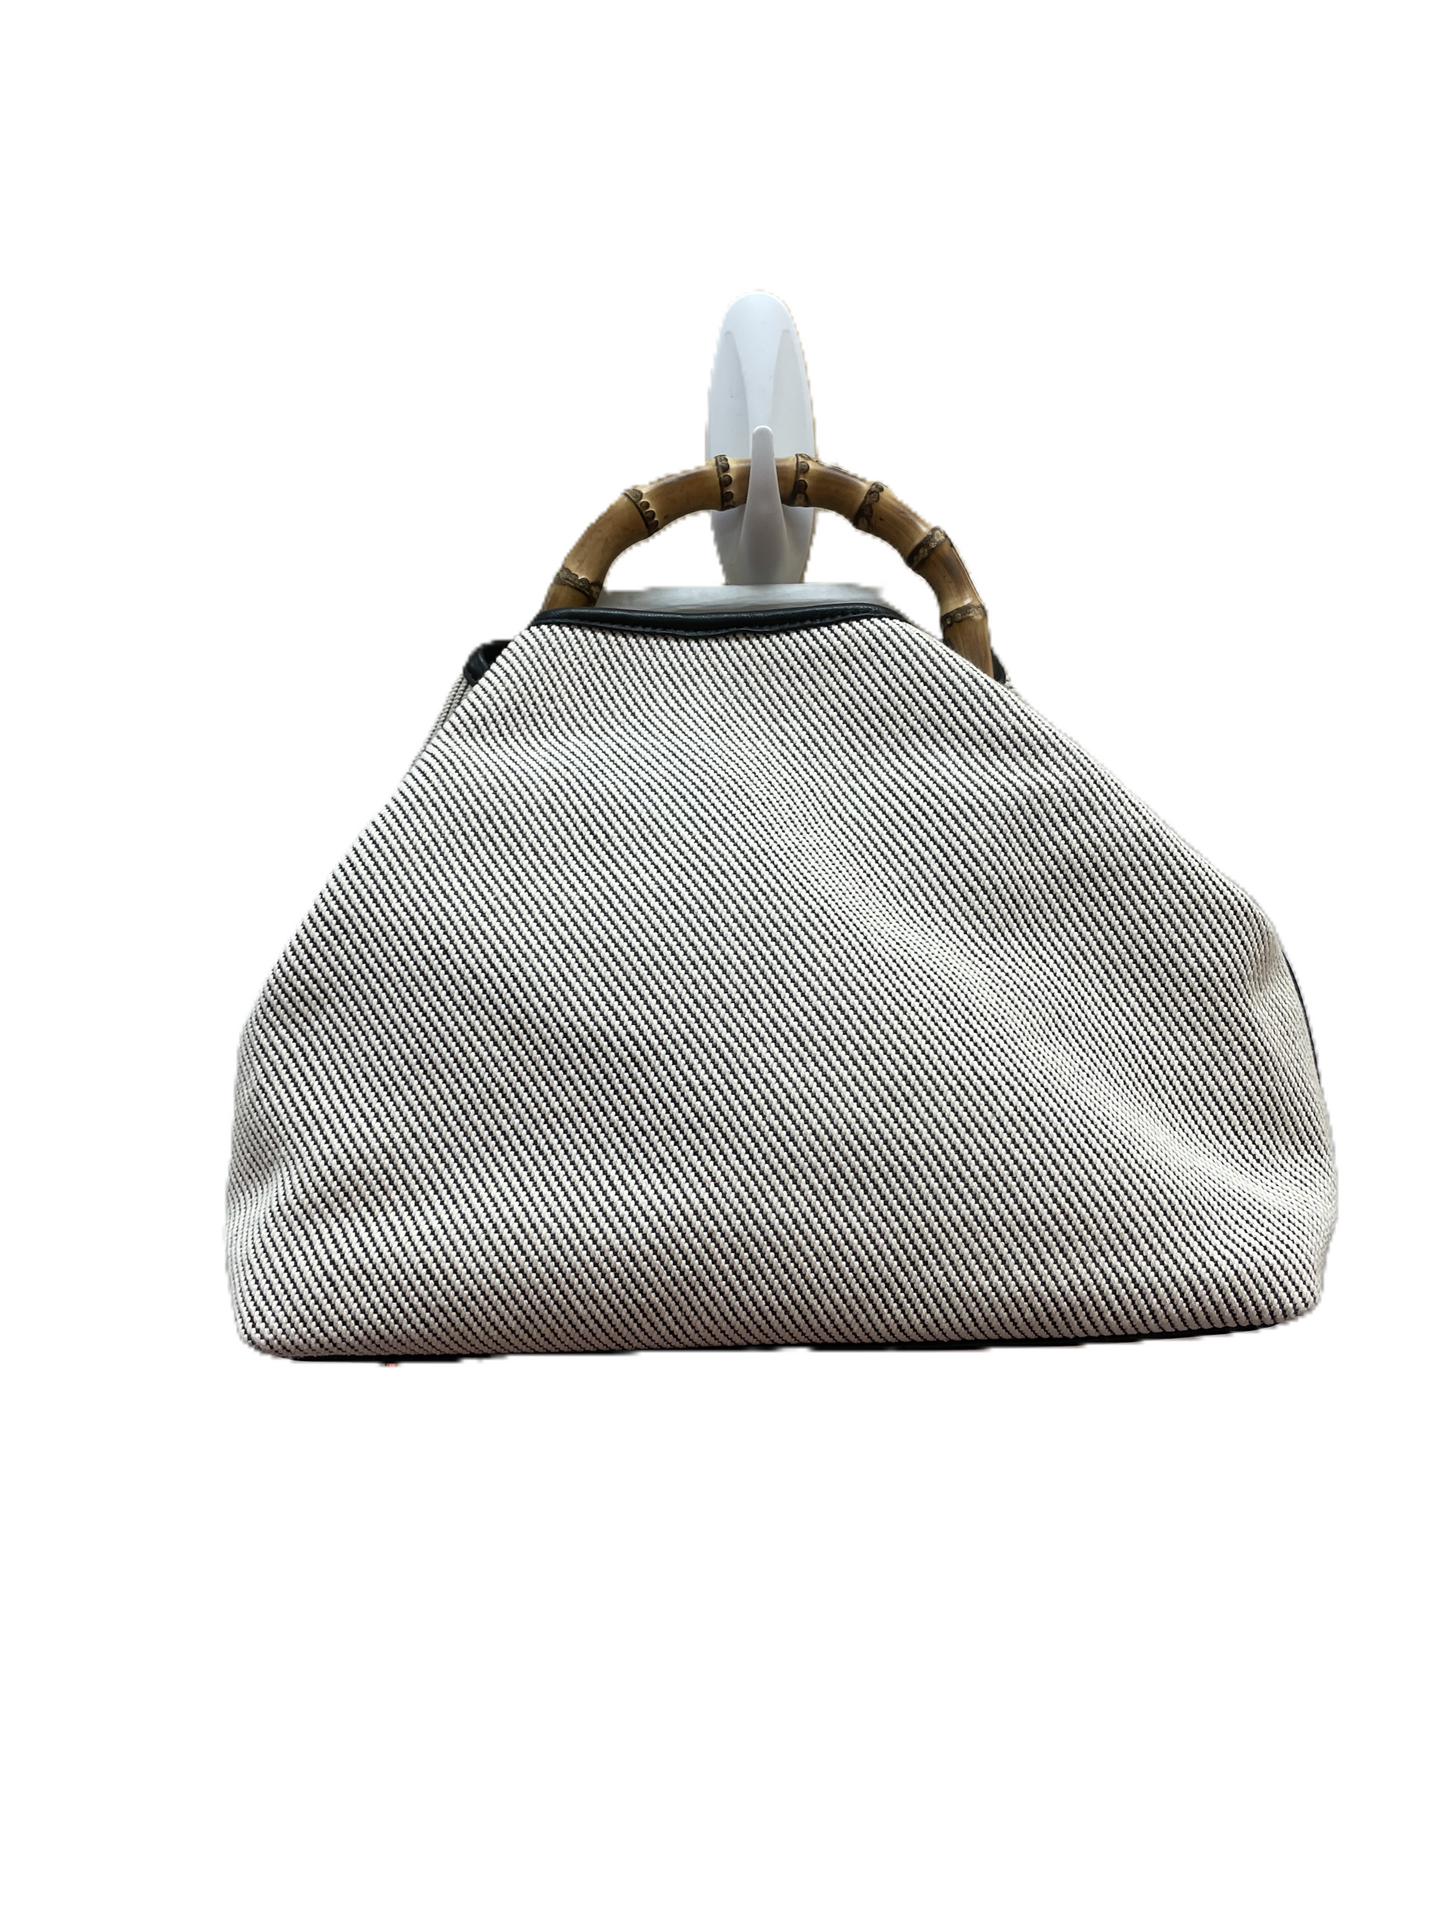 Handbag Designer By J Mclaughlin  Size: Large